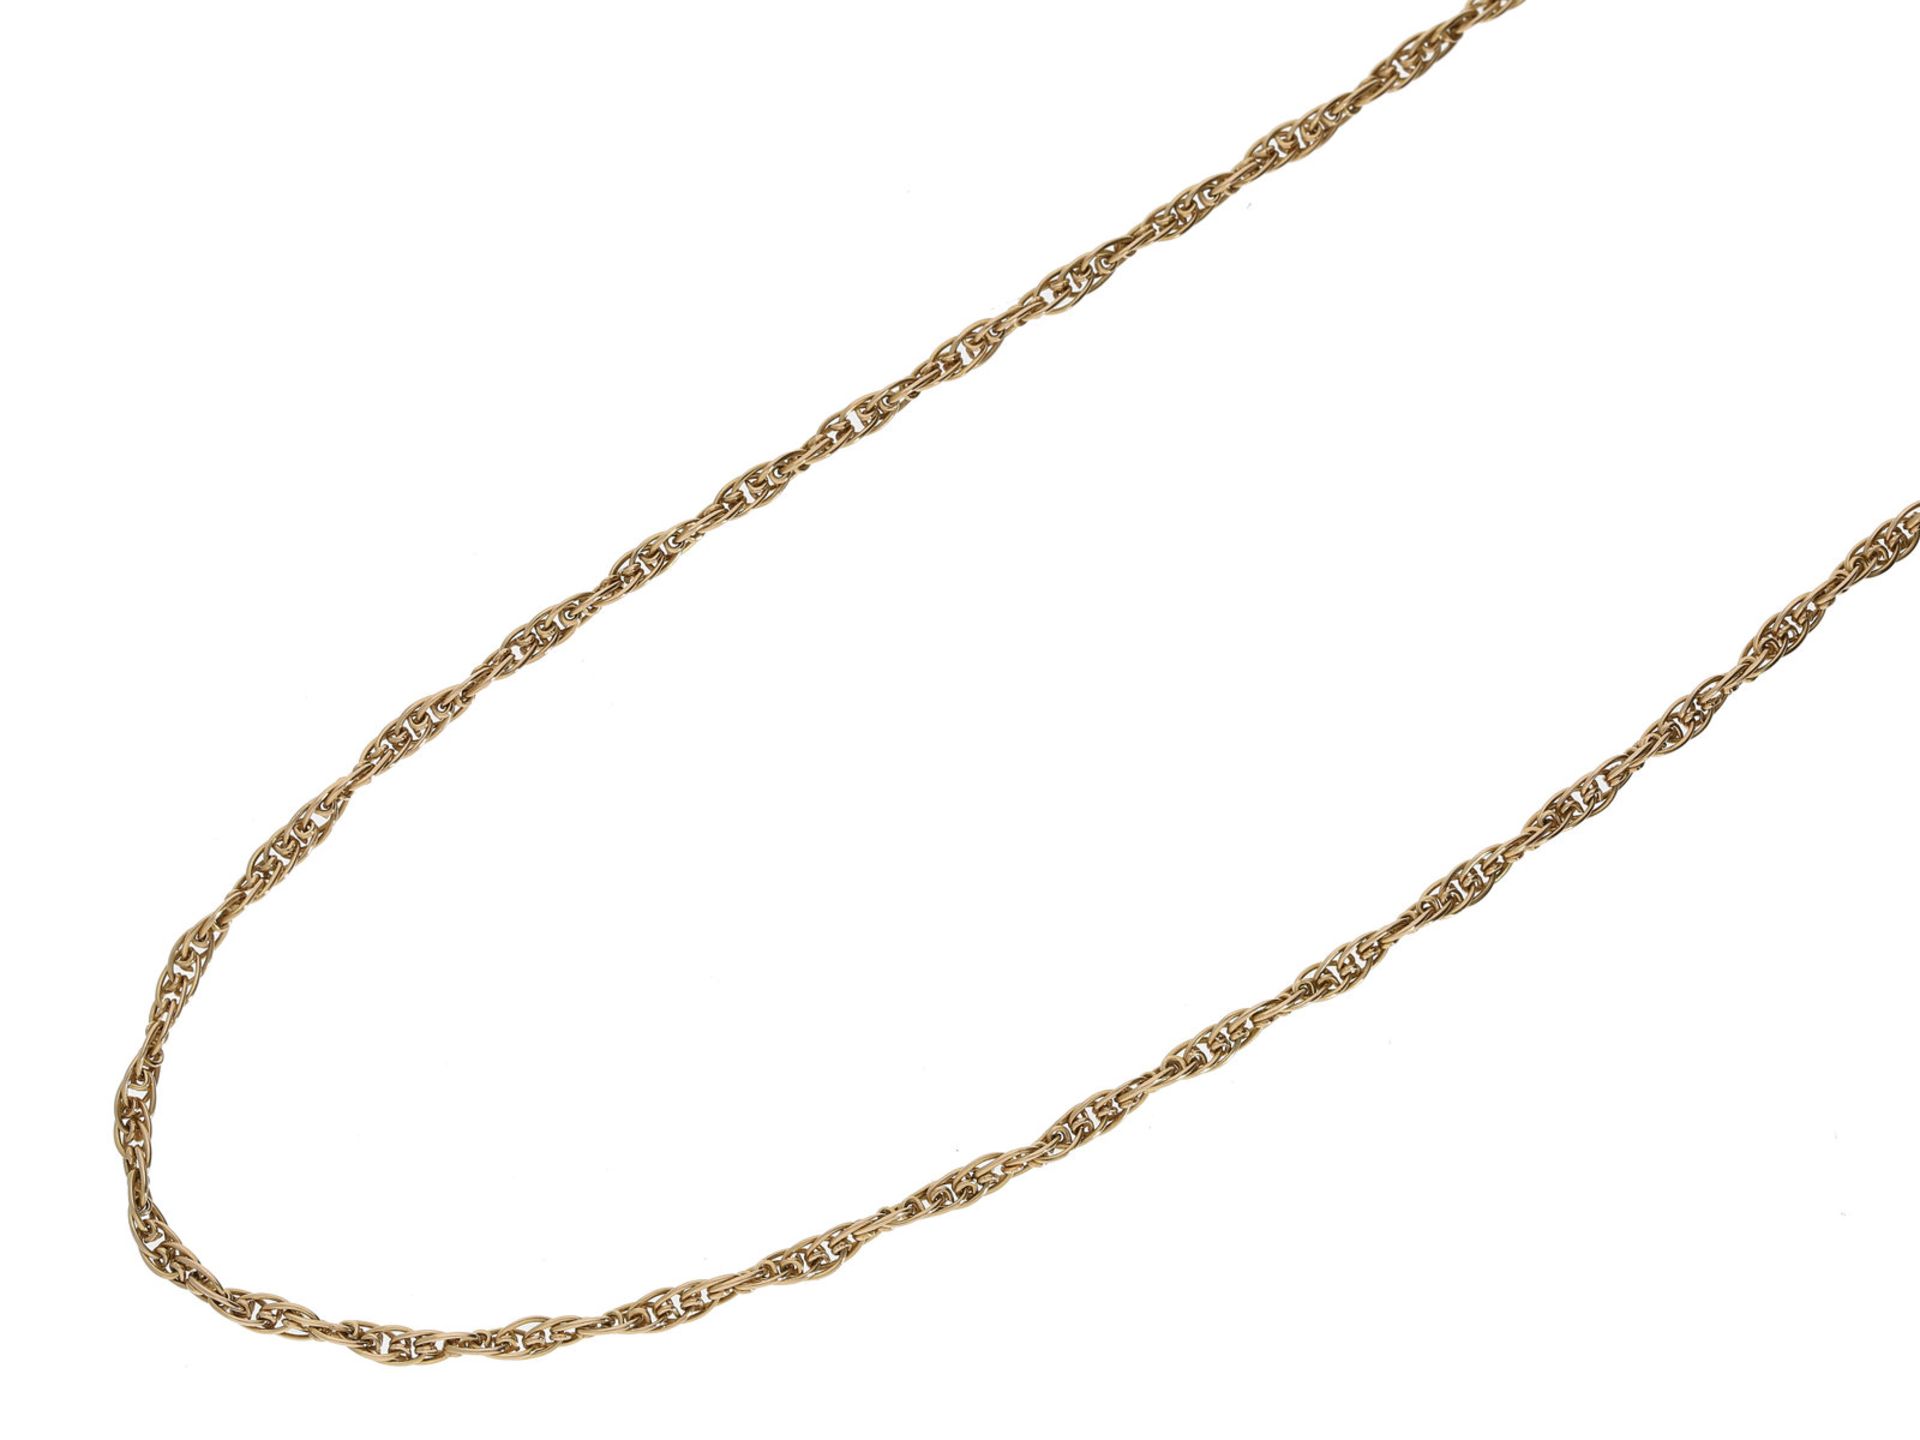 Kette/Collier: lange vintage Collier-Kette aus 18K RotgoldCa. 68cm lang, ca. 9,6g, 18K Rotgold,